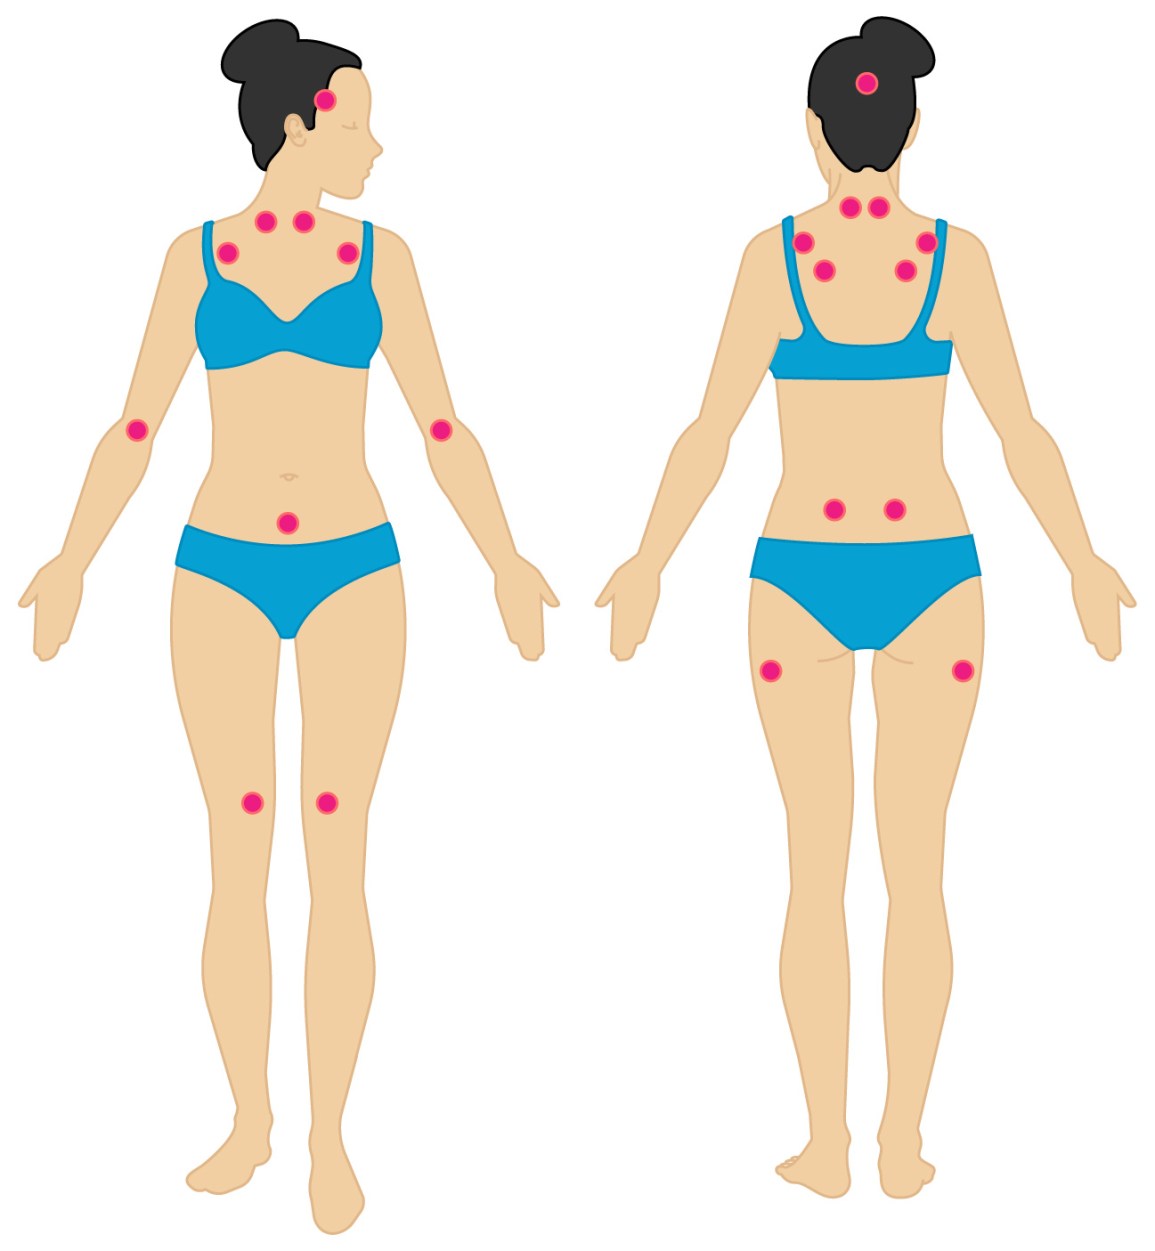 Lokalizacja „punktów tkliwych” u chorych na fibromialgię